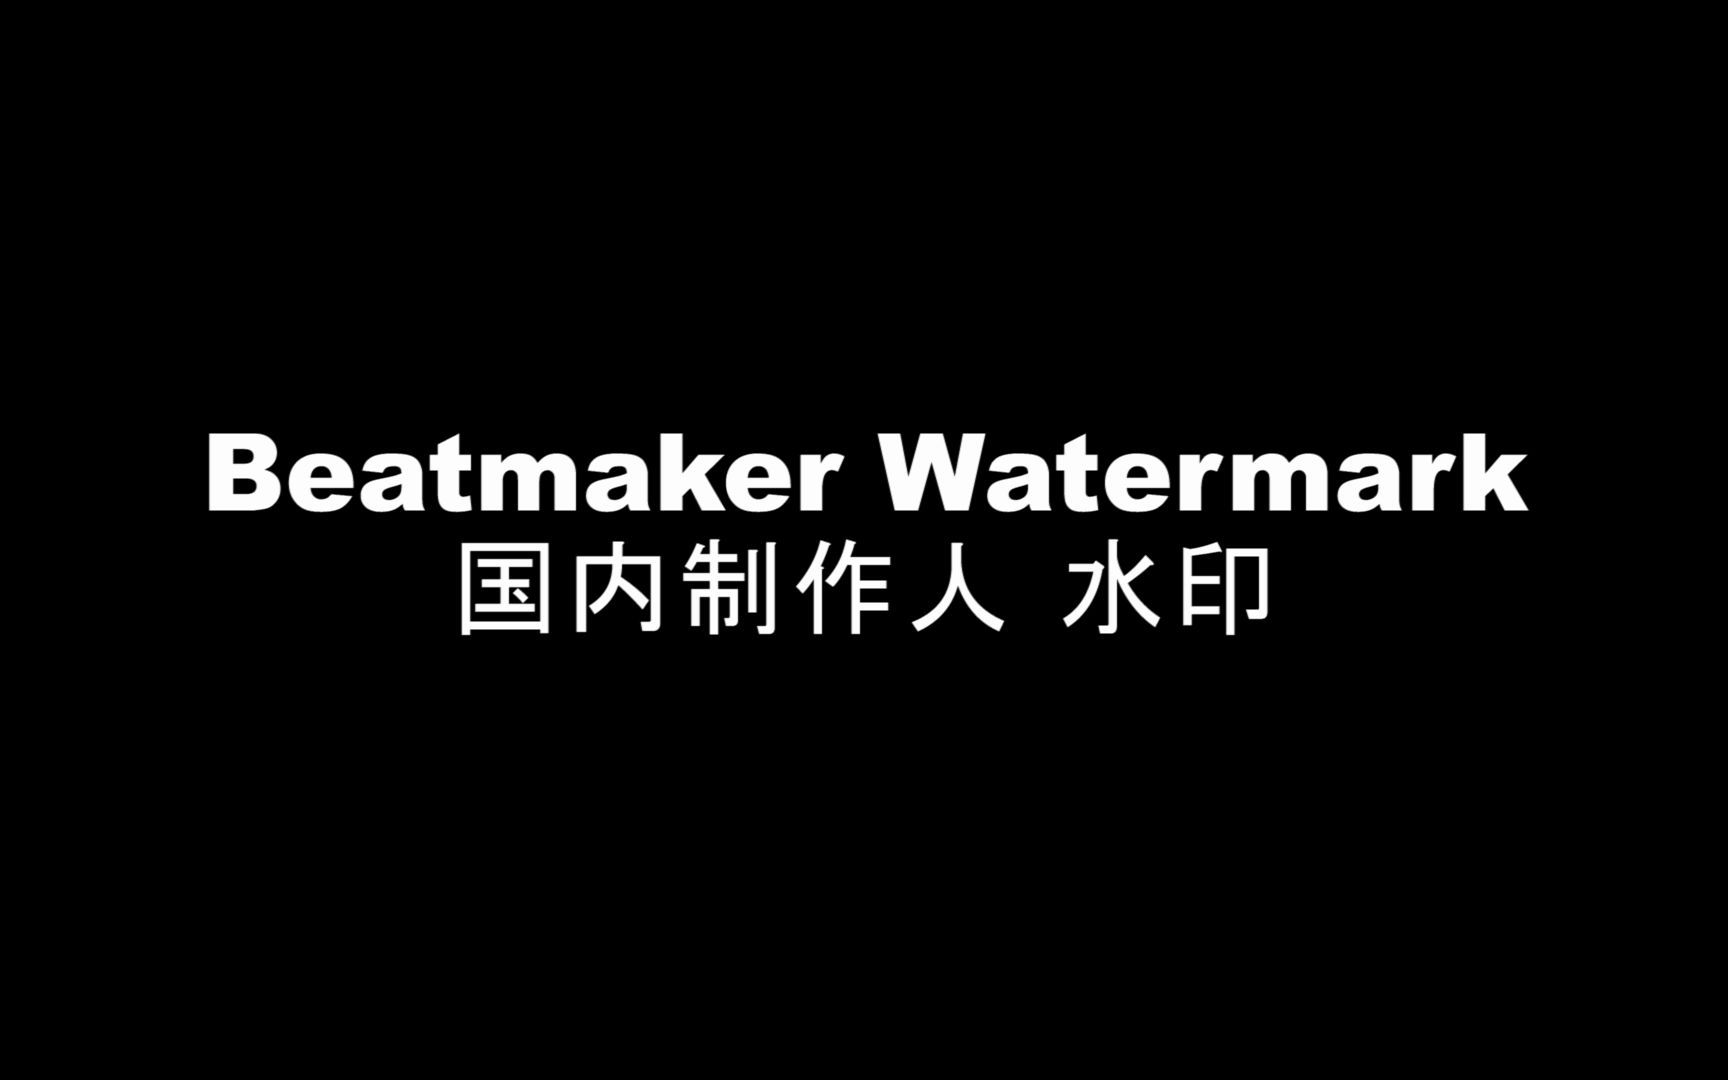 【Beat Maker】中文说唱圈制作人水印